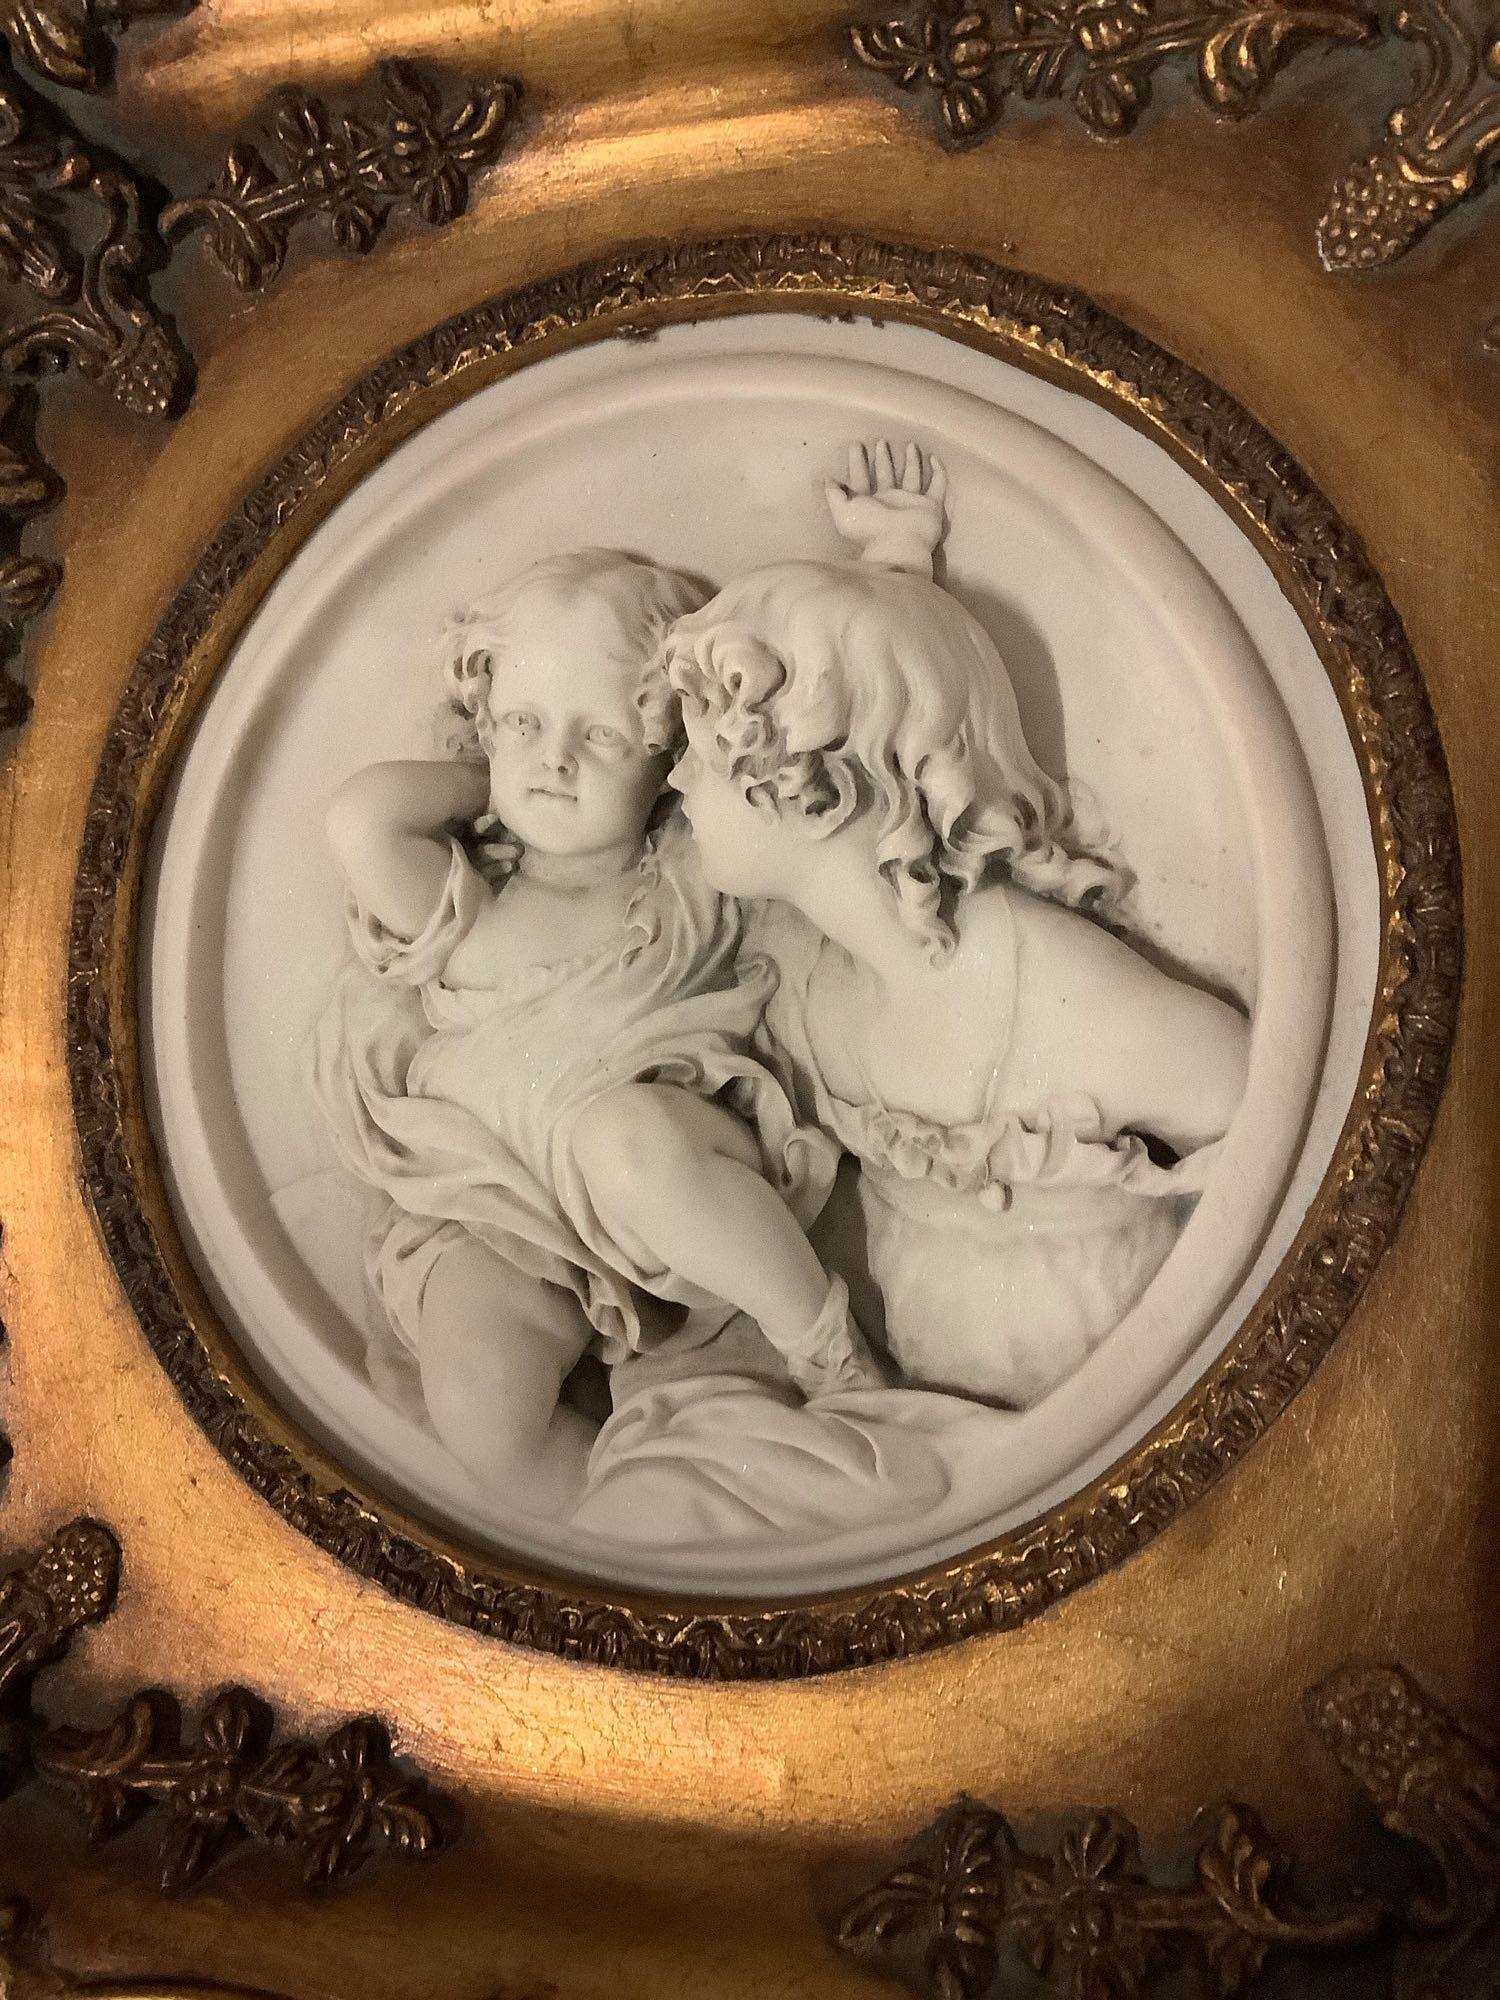 Antique gilt framed cherub relief marble art. Enrico Braga cherub plaque w/ Perfugium Regibus coin